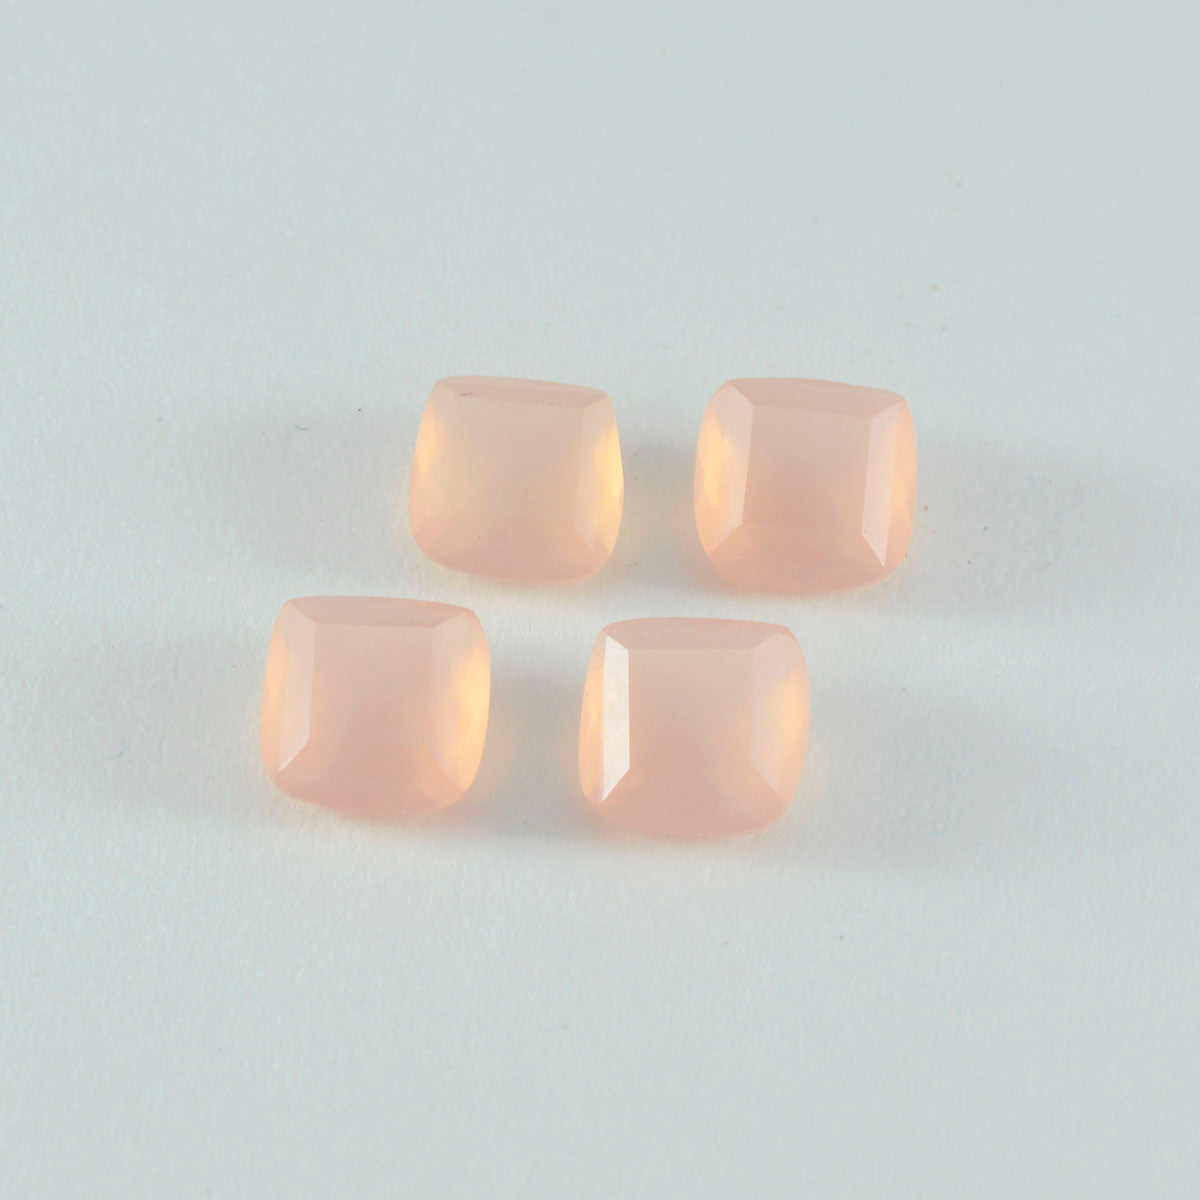 Riyogems, 1 pieza, cuarzo rosa facetado, 10x10mm, forma de cojín, gemas sueltas de calidad asombrosa